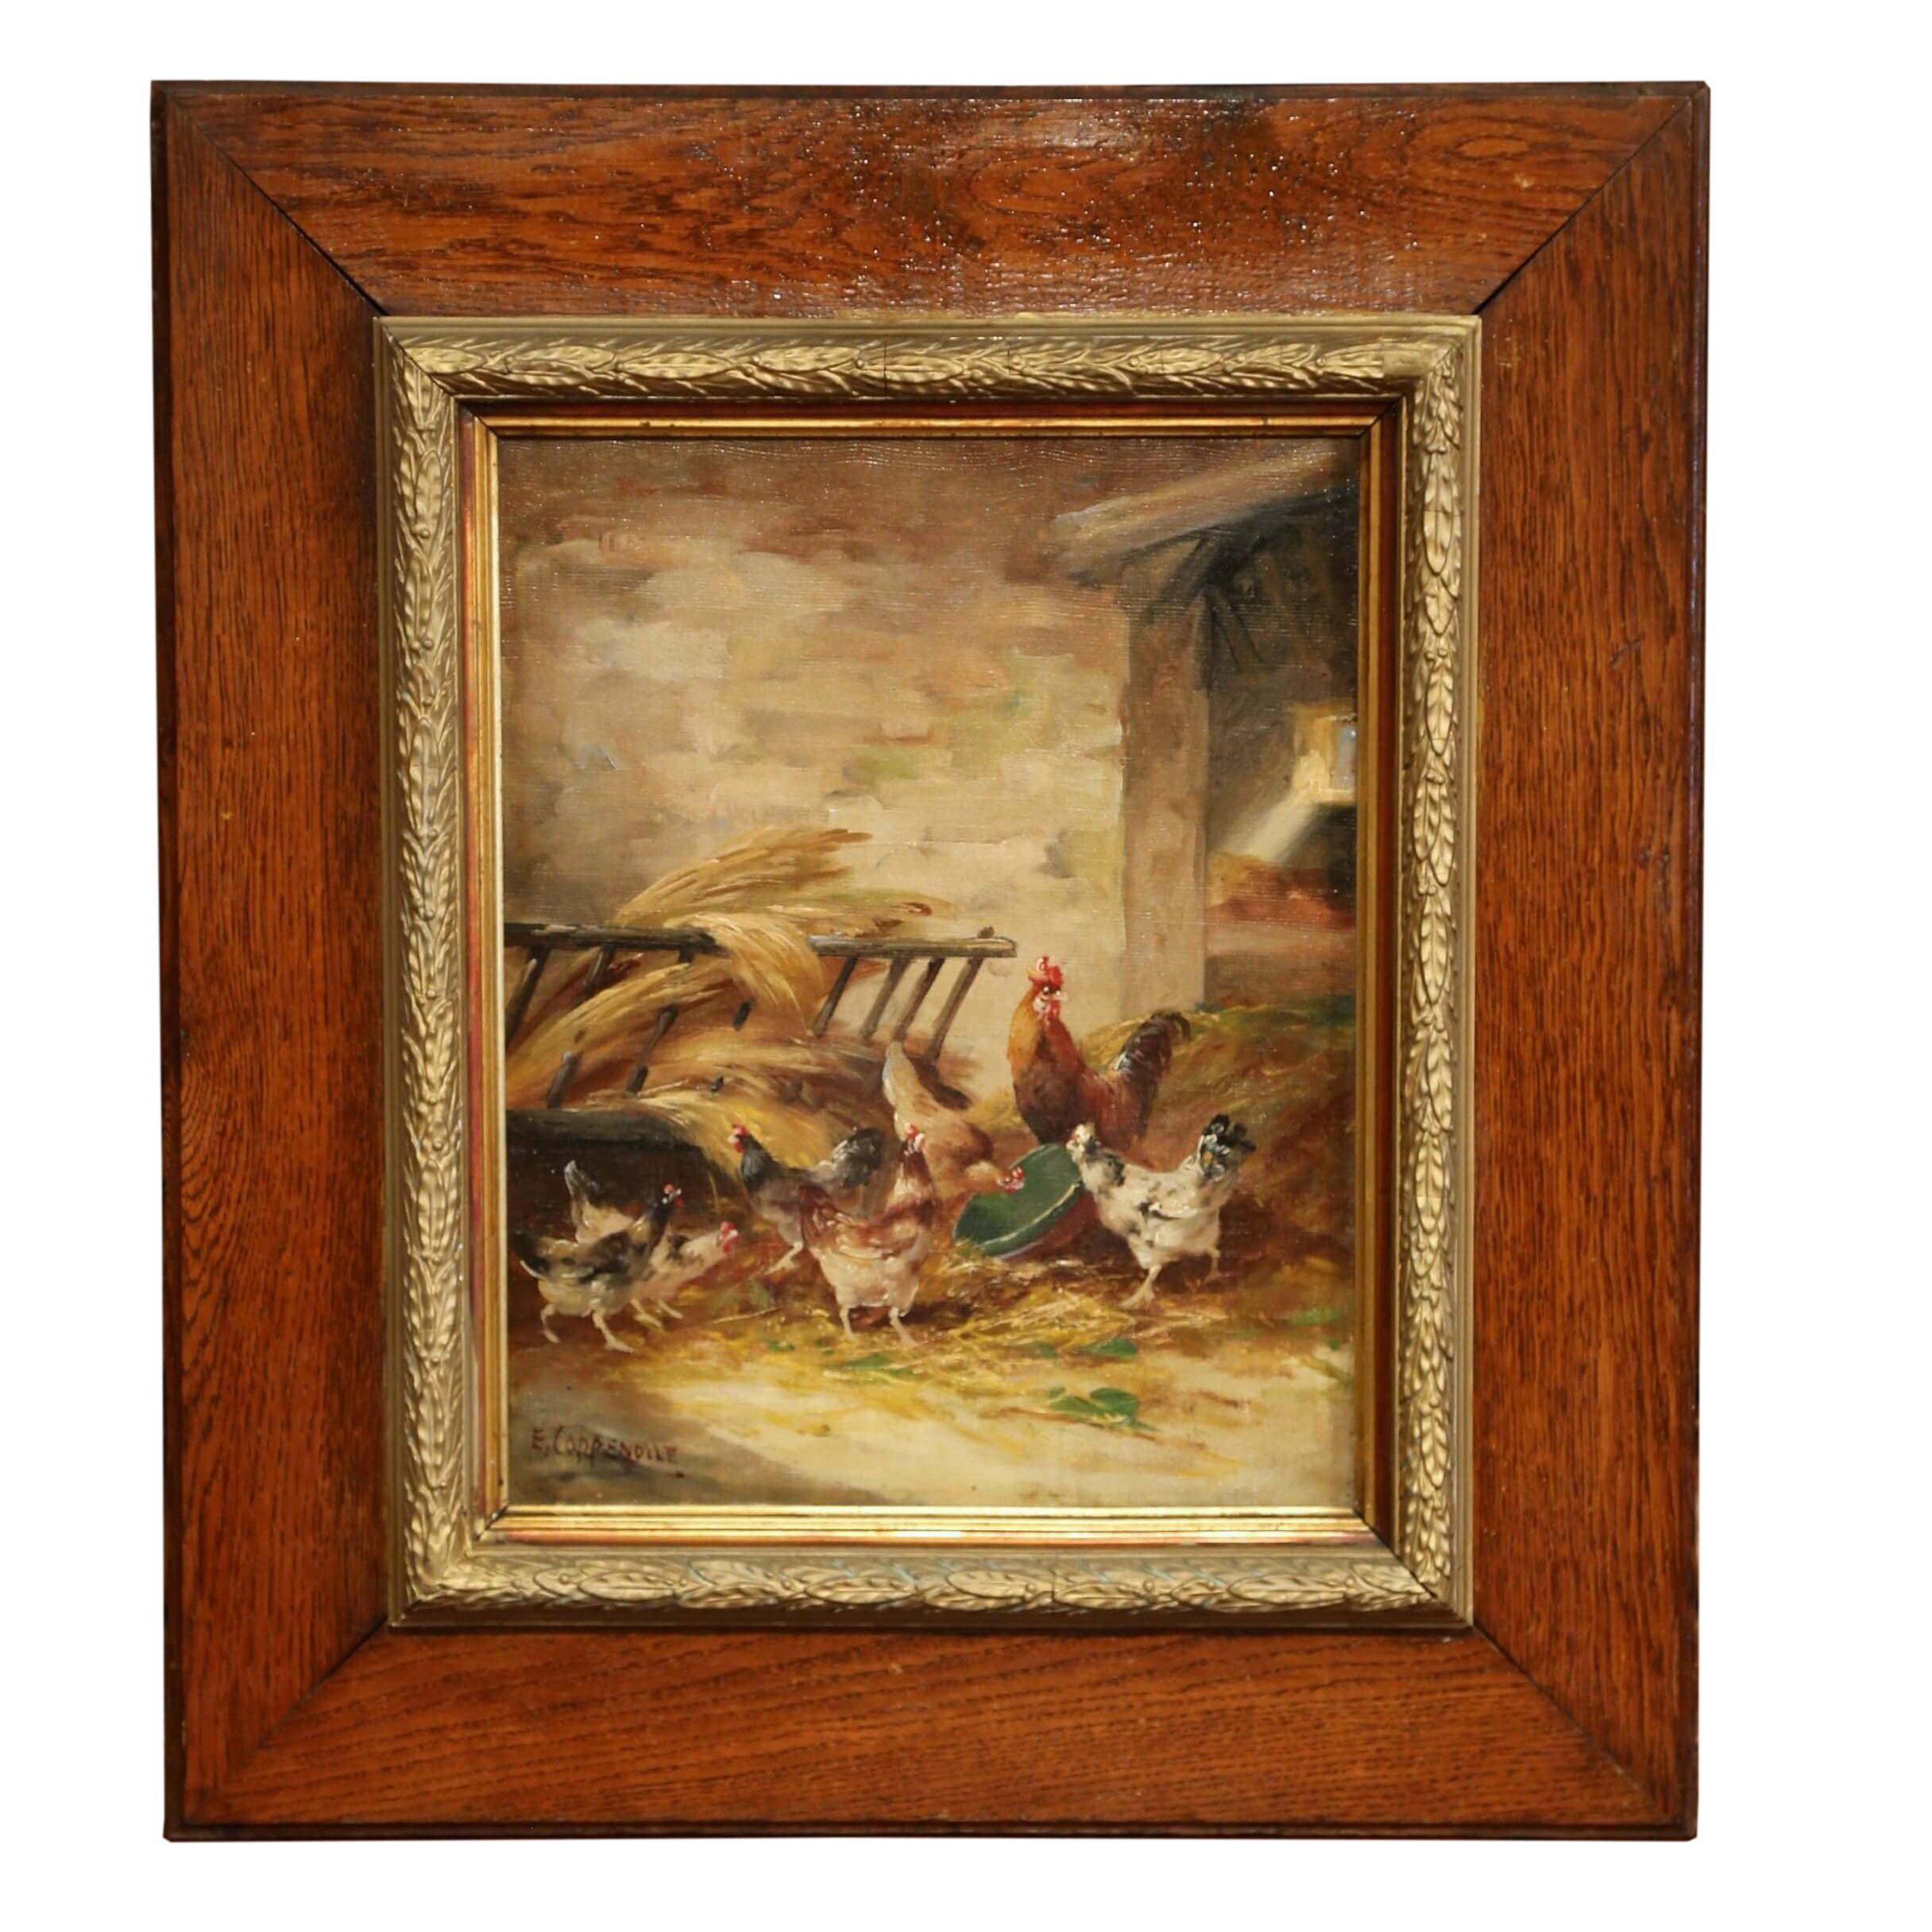 Animal Painting Edmond Van Coppenolle - Peinture à l'huile sur toile encadrée du 19ème siècle représentant un poulet, signée E. Coppenolle